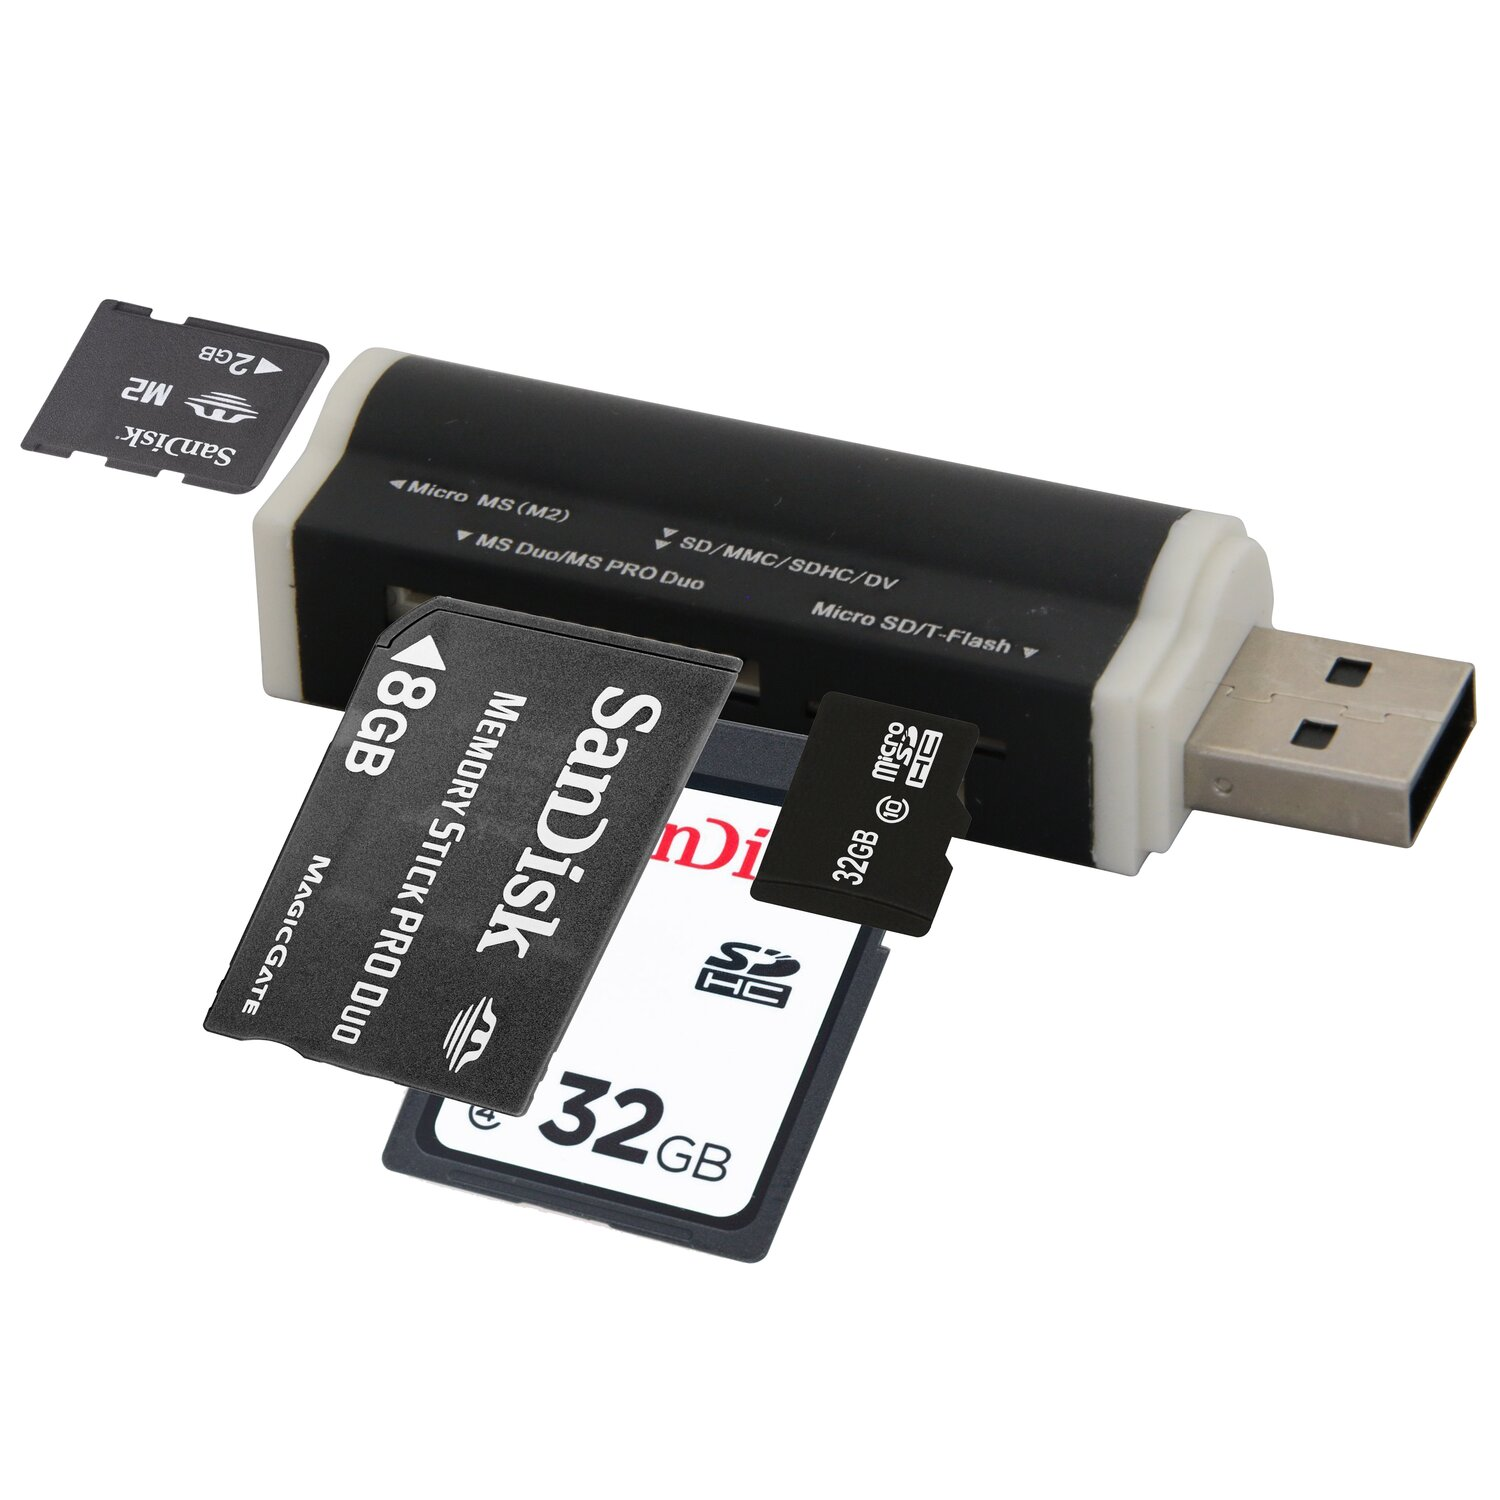 Kartenleser All in One USB COFI